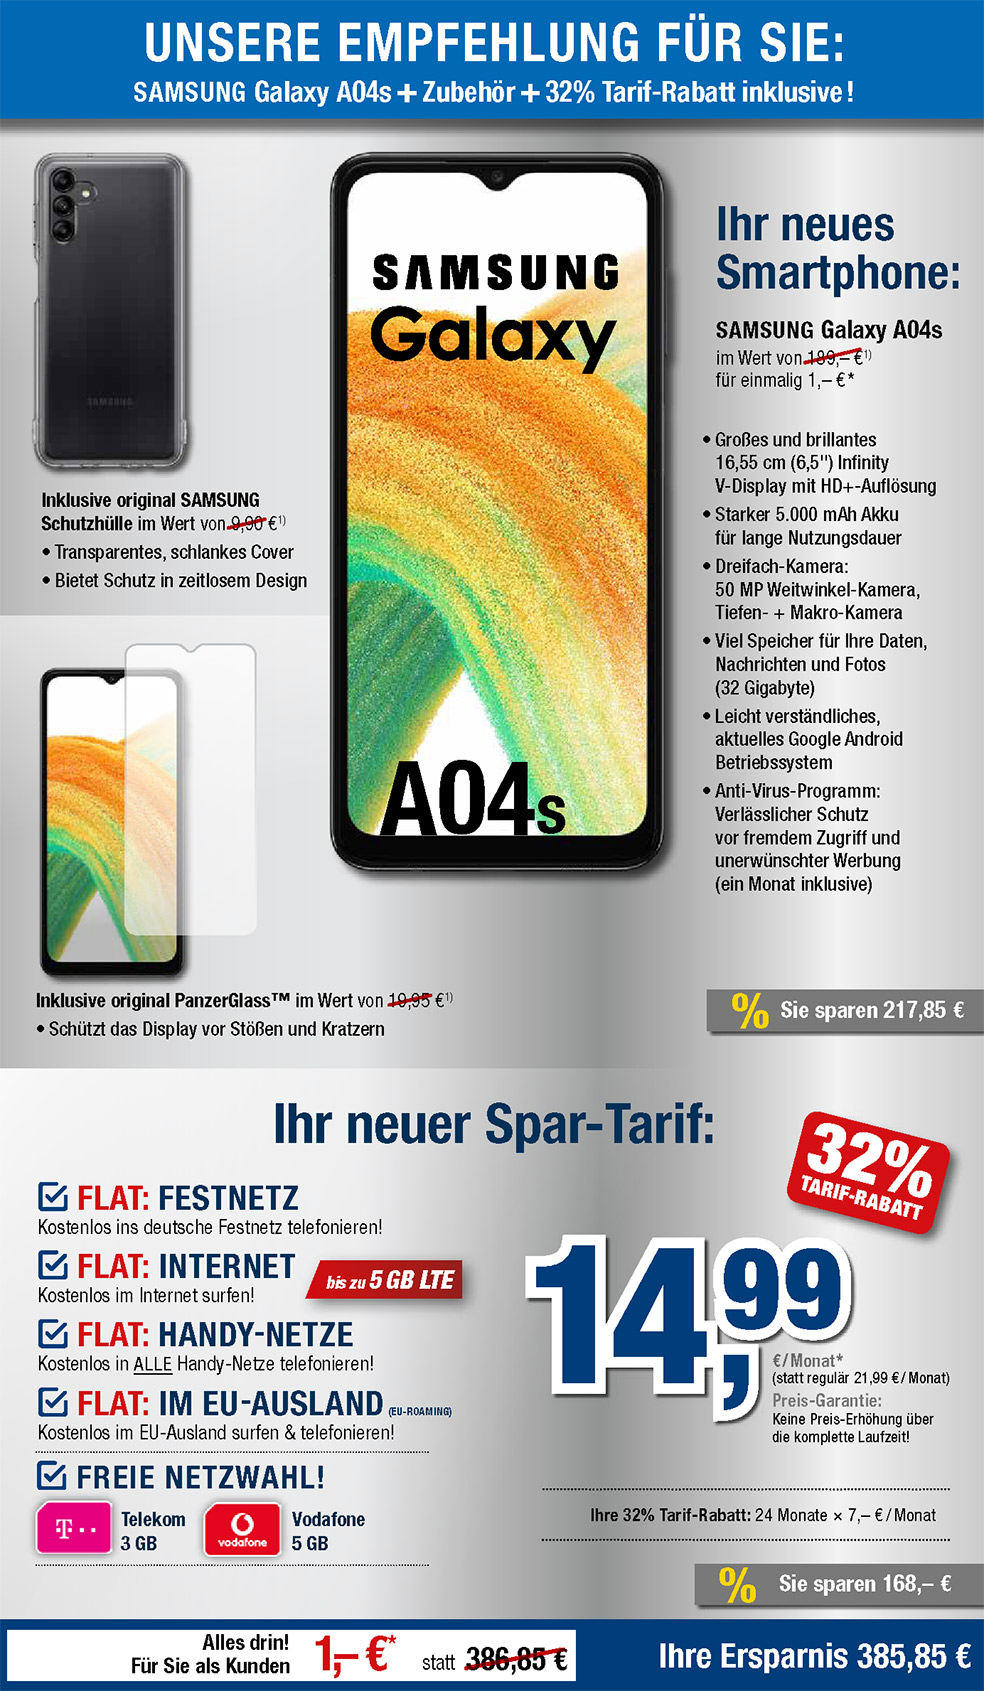 Für nur 1 €*: Samsung Galaxy A04s + Zubehör + Handyvertrag mit ALL NET FLAT für 19,99 €/Monat